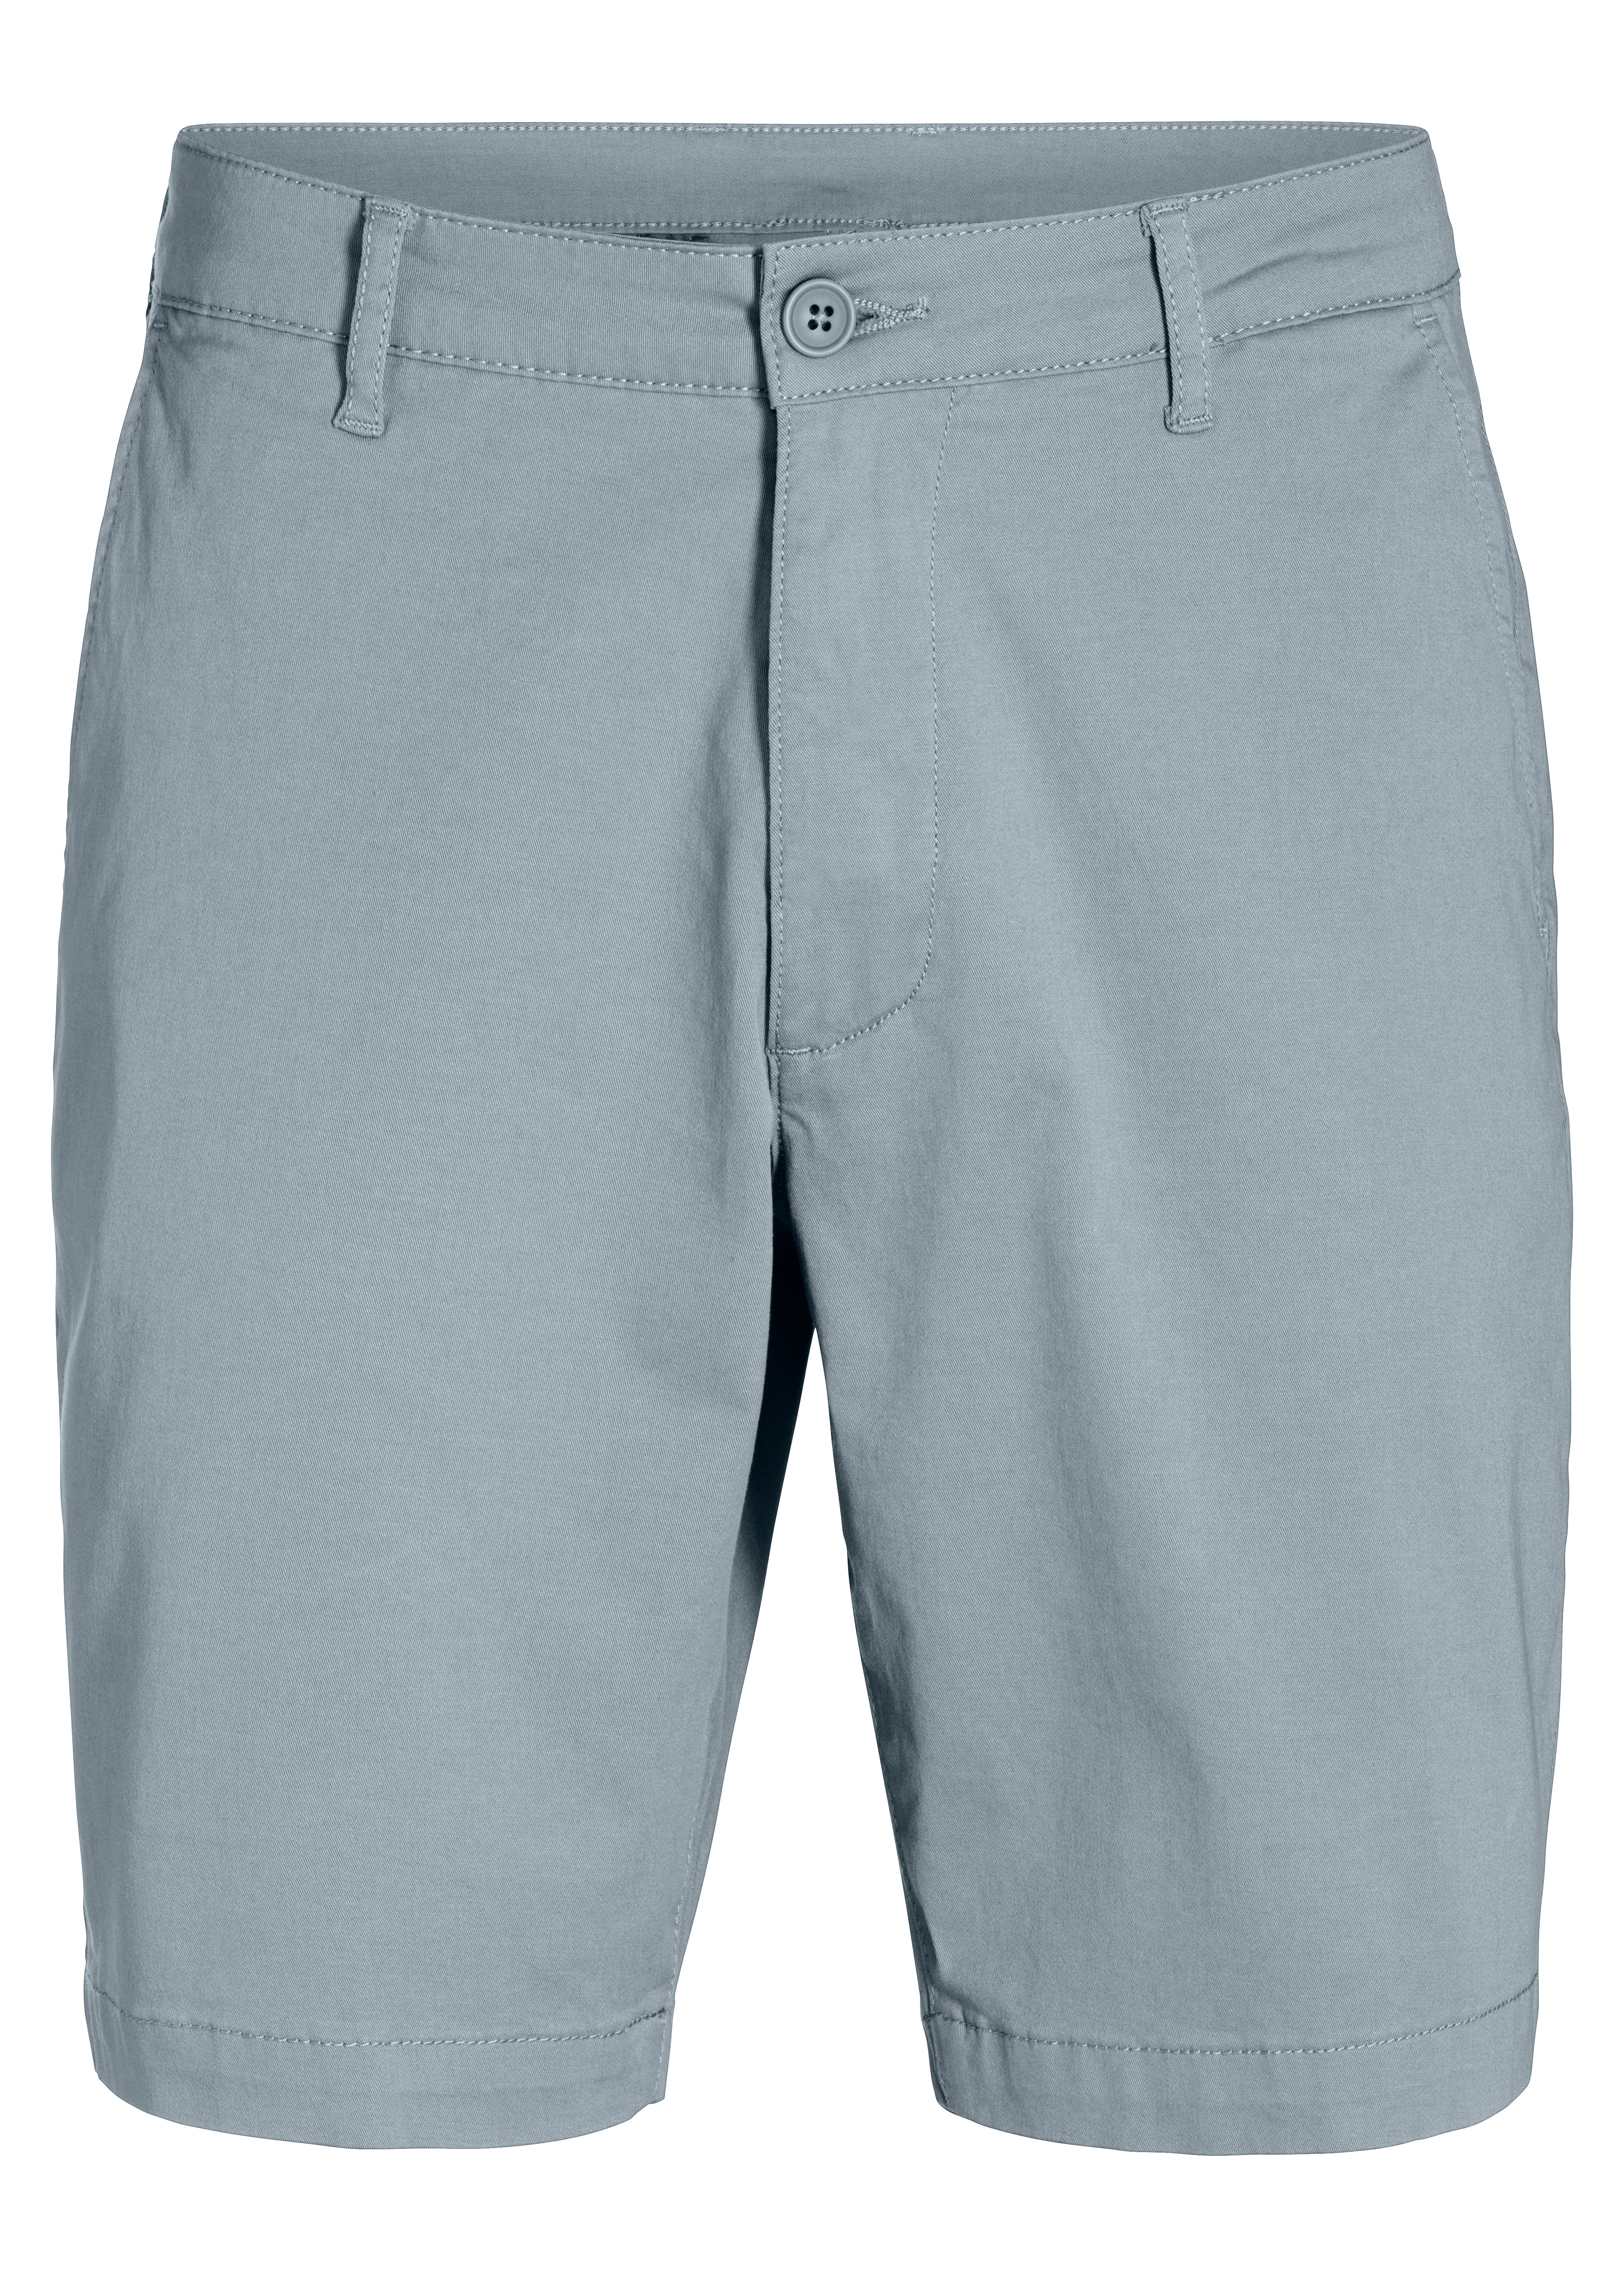 H.I.S aus Shorts graublau Baumwoll-Qualität elastischer